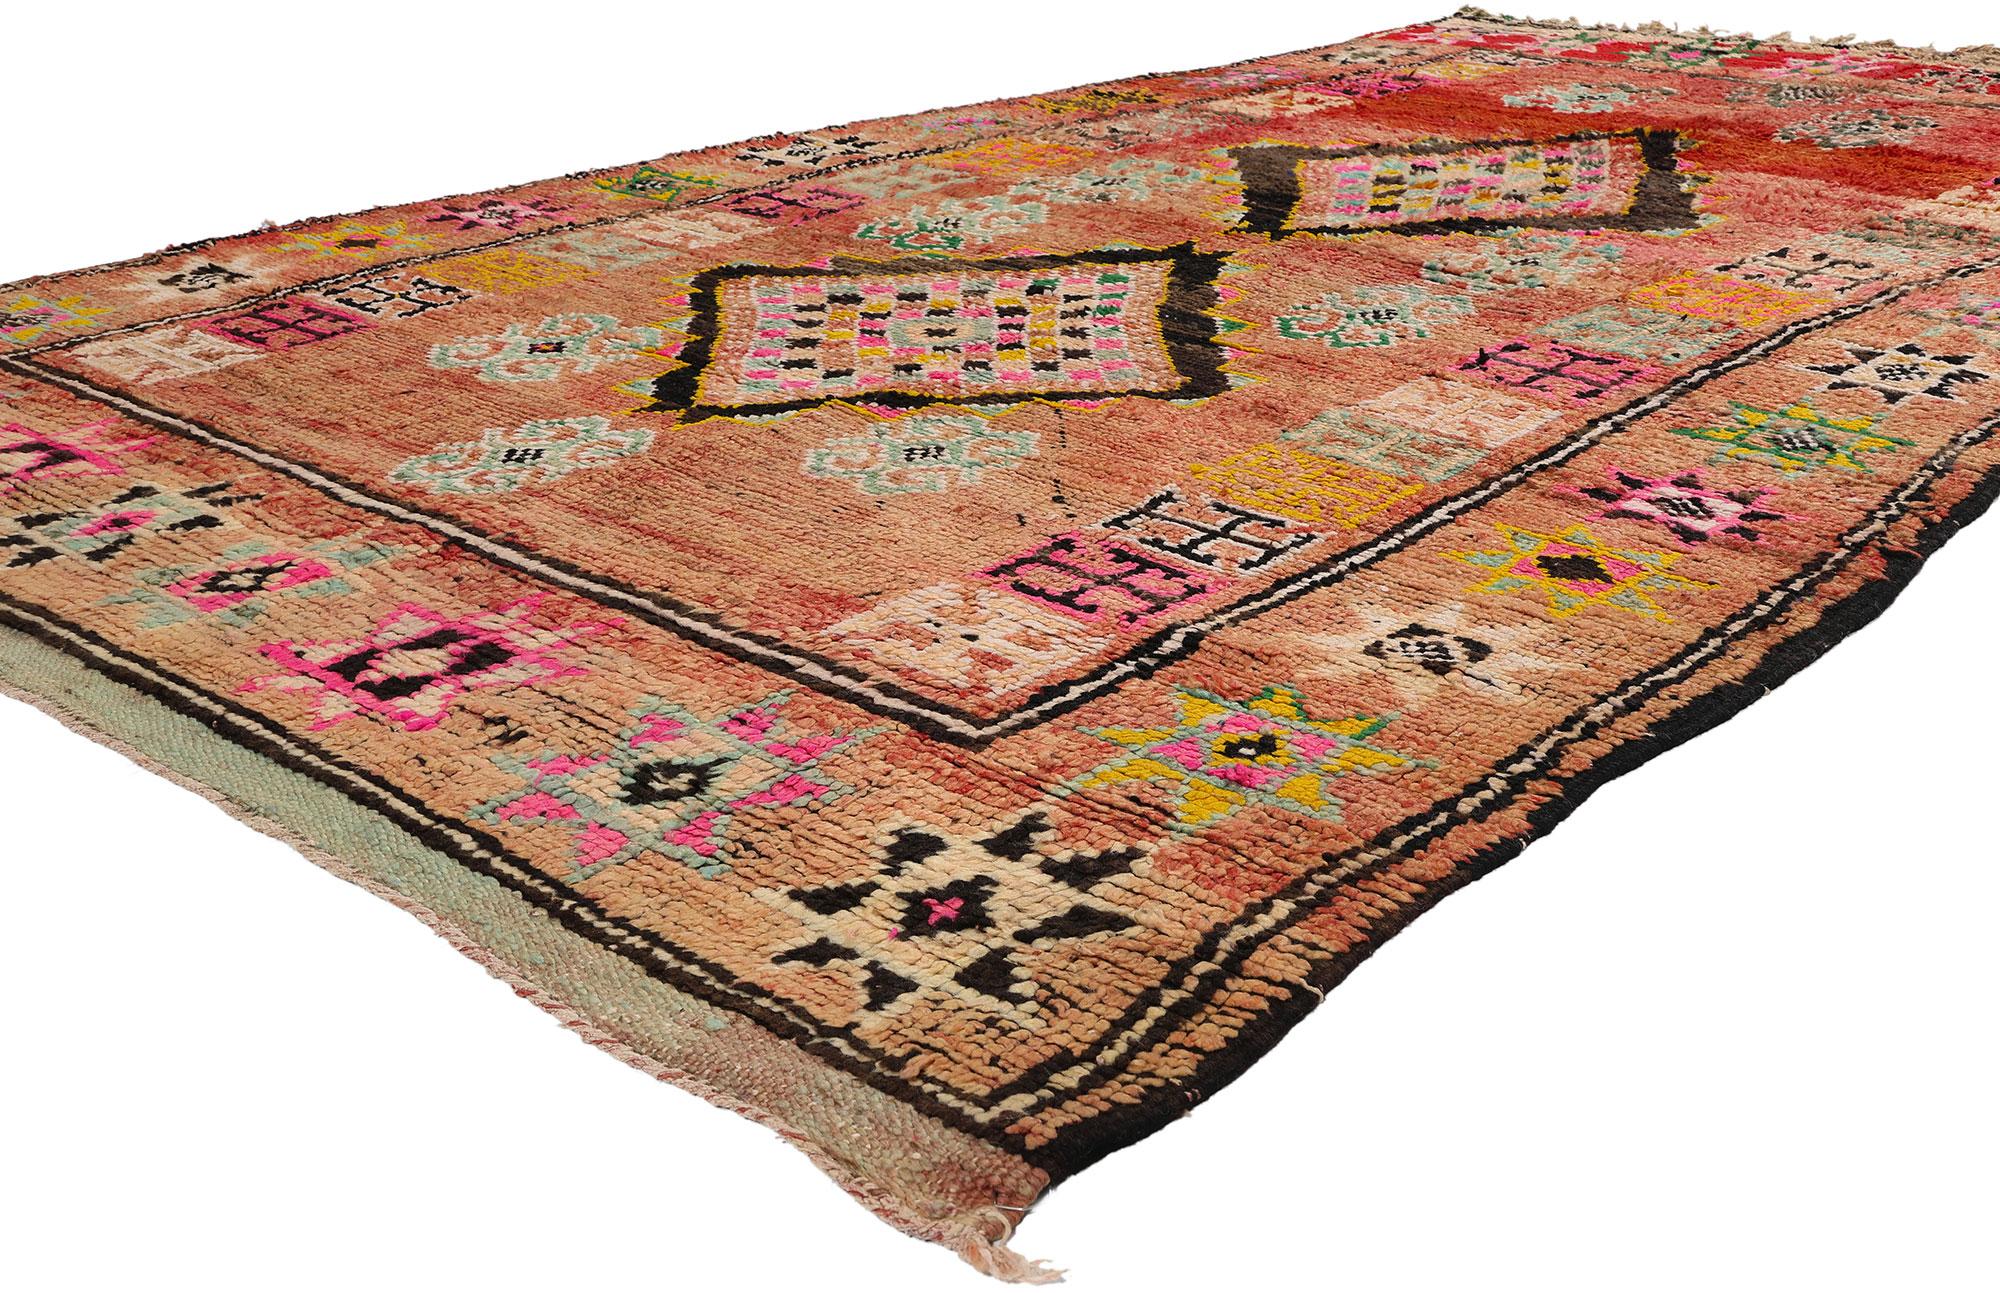 21747 Vintage Rot Boujad Marokkanischer Teppich, 05'05 x 09'01. Die aus der marokkanischen Region Boujad stammenden Boujad-Teppiche verkörpern das lebendige künstlerische Erbe der Berberstämme, vor allem der Haouz und Rehamna. Diese sorgfältig